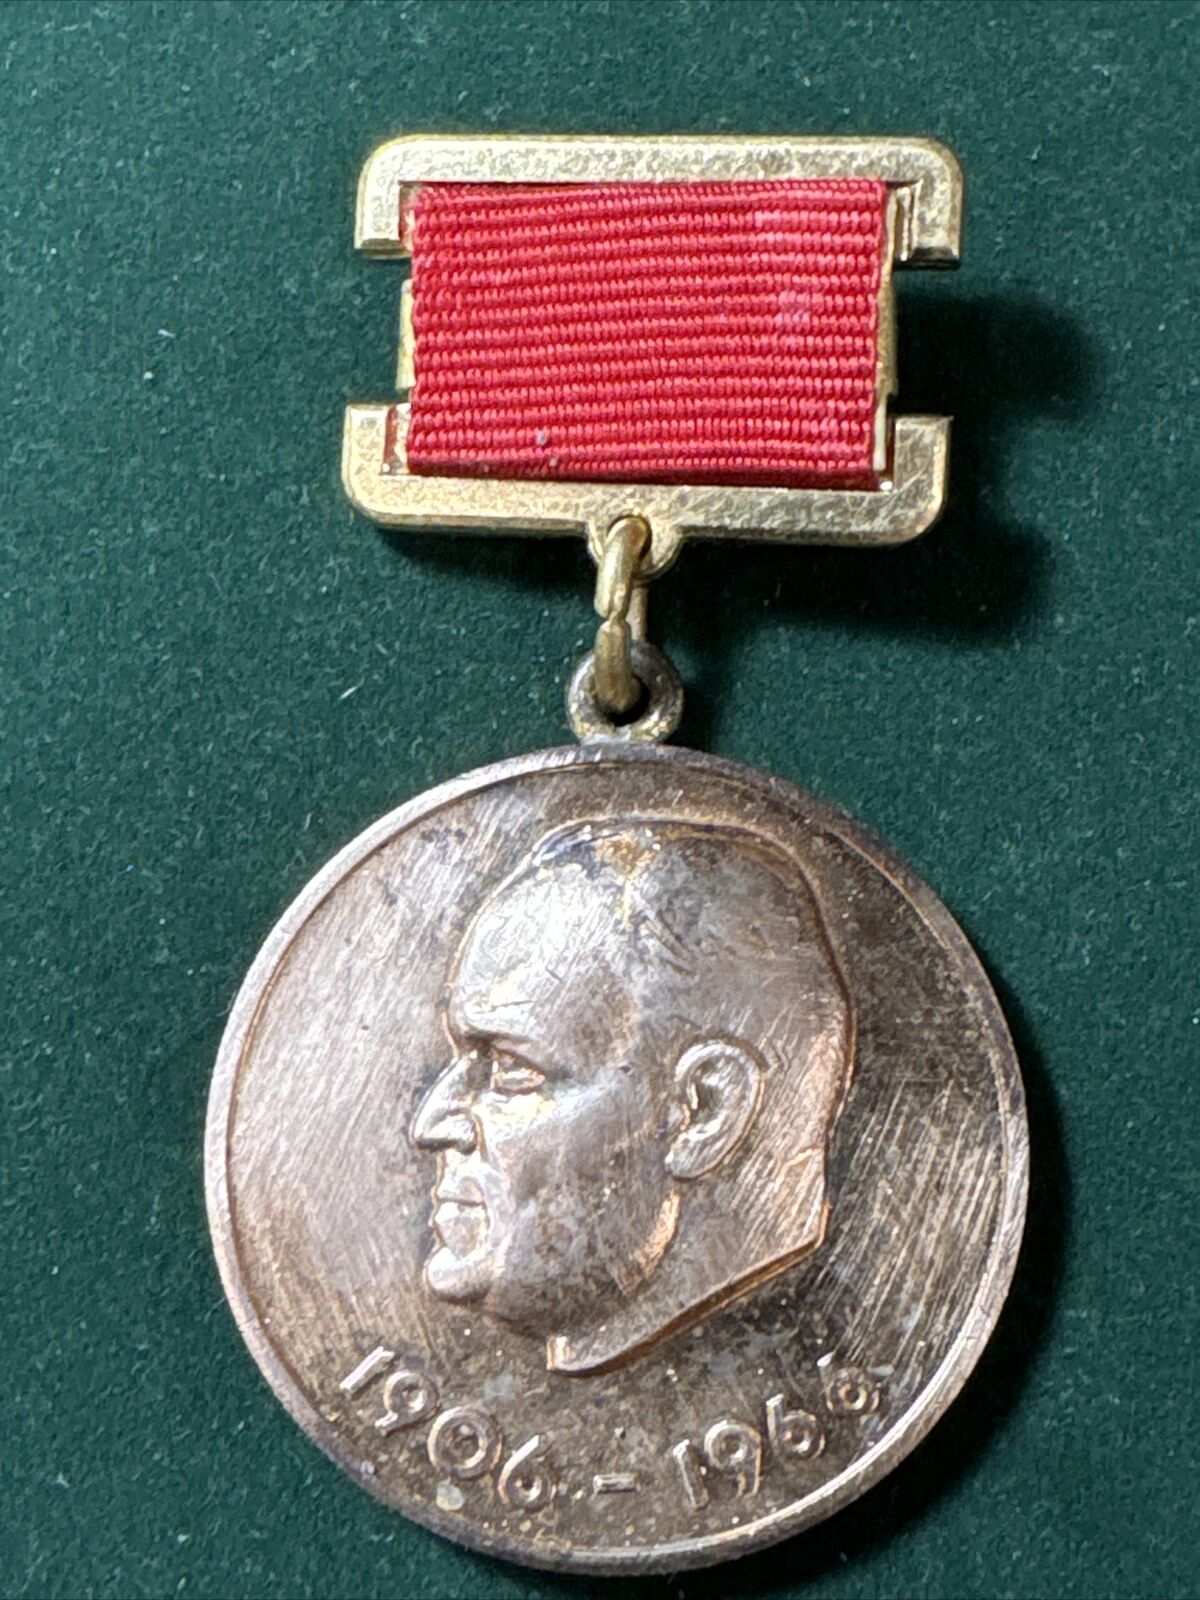 USSR COMM. Medal Ann. of S. KOROLEV - SCIENTIST, designer of space system